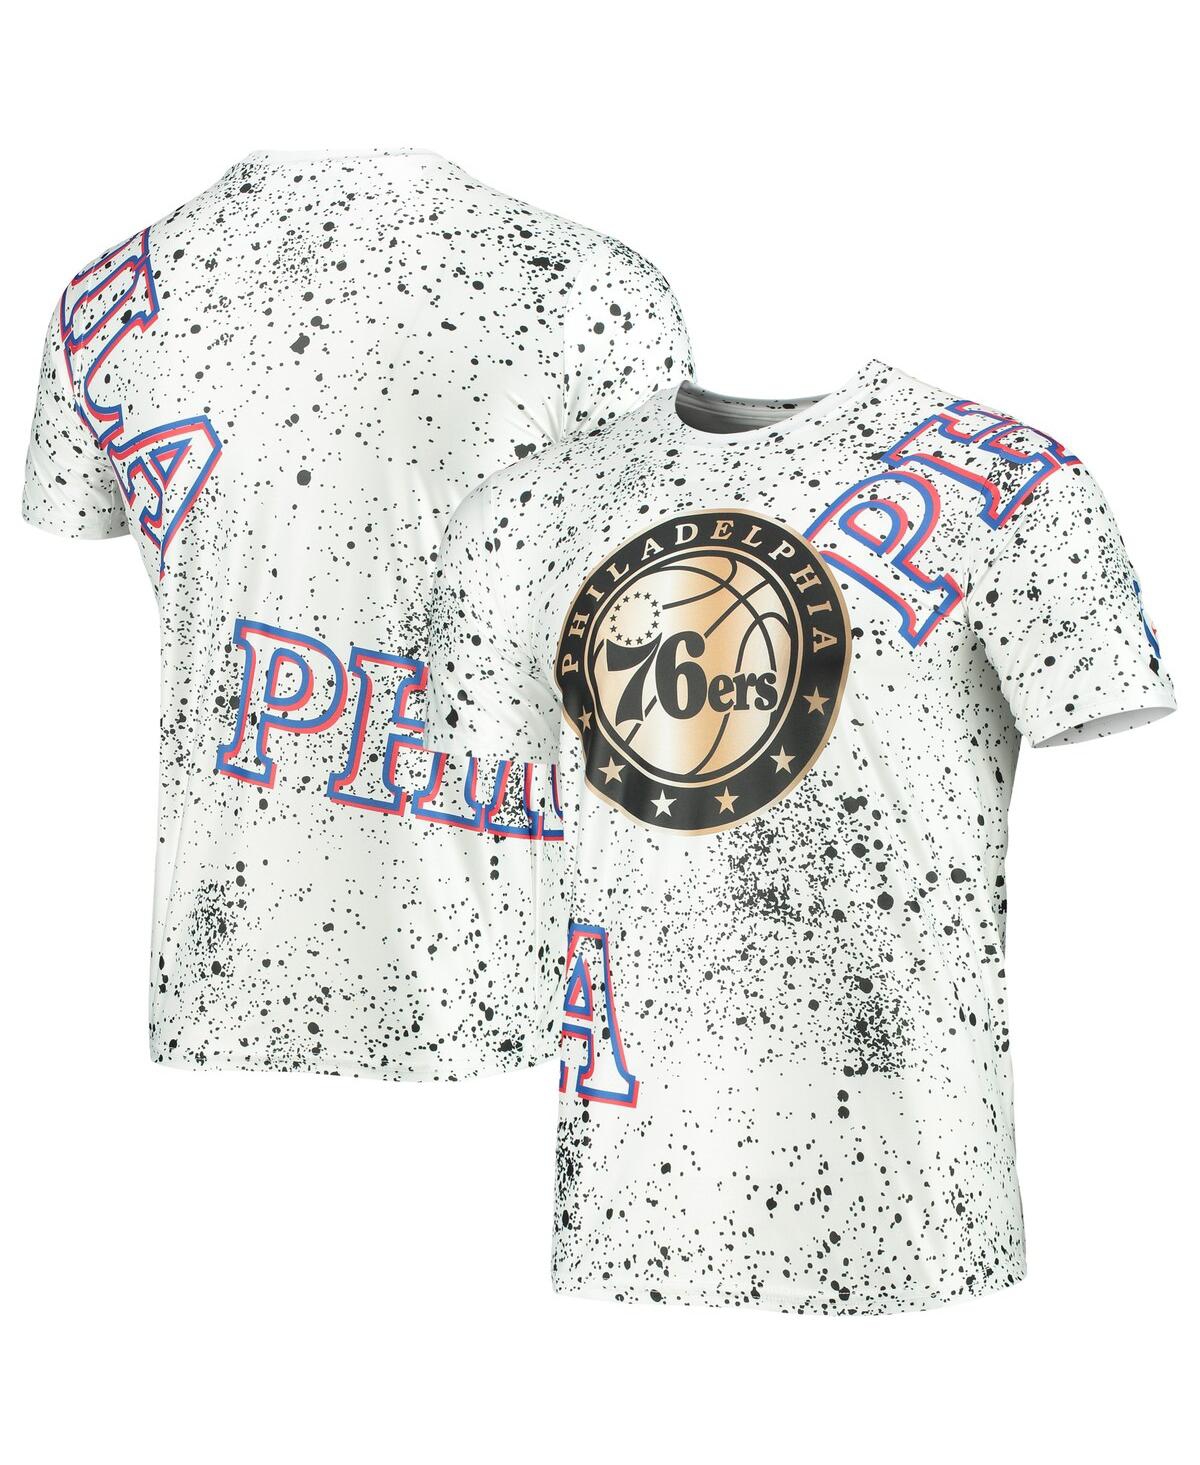 Men's White Philadelphia 76Ers Gold Foil Splatter Print T-shirt - White